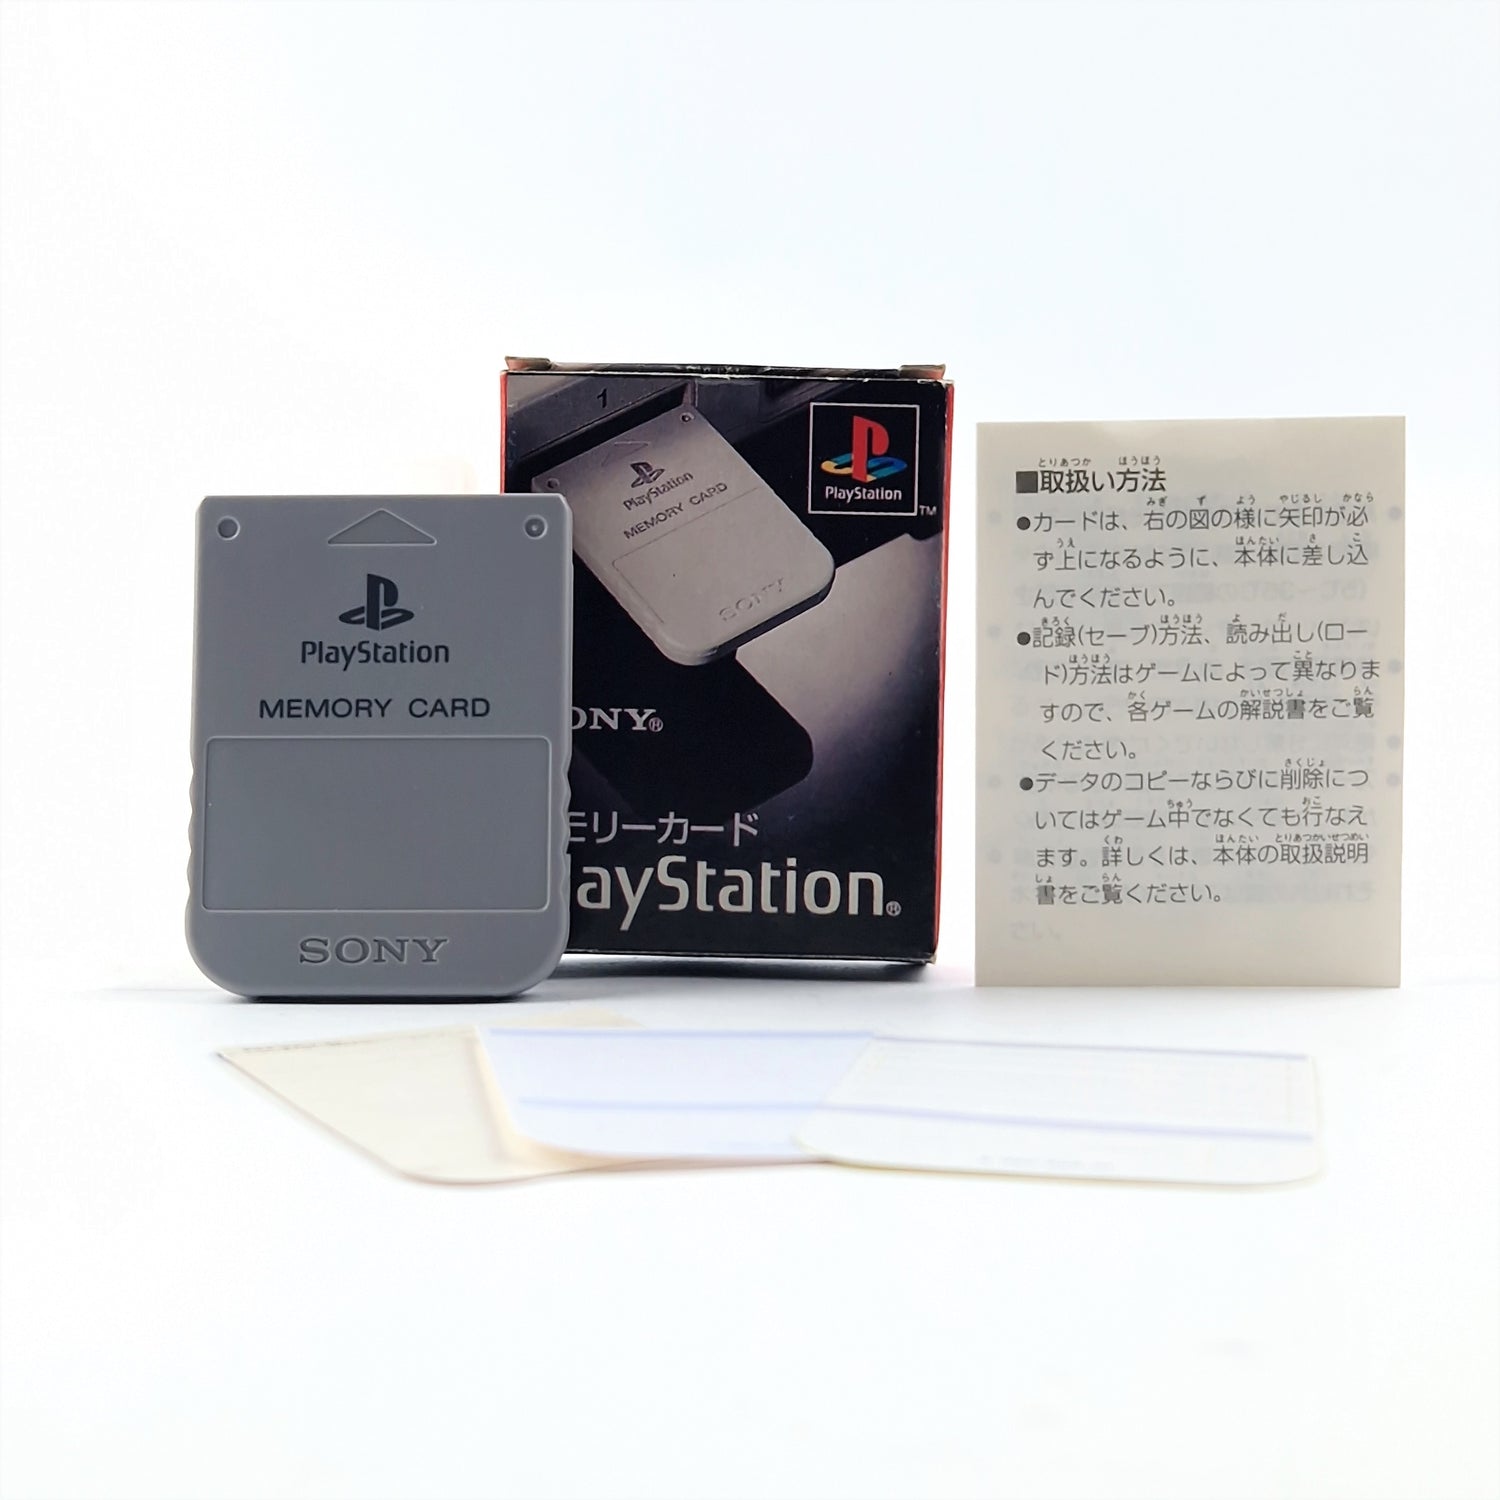 Playstation 1 memory card: Memory Card Gray with original packaging - JAPAN original packaging